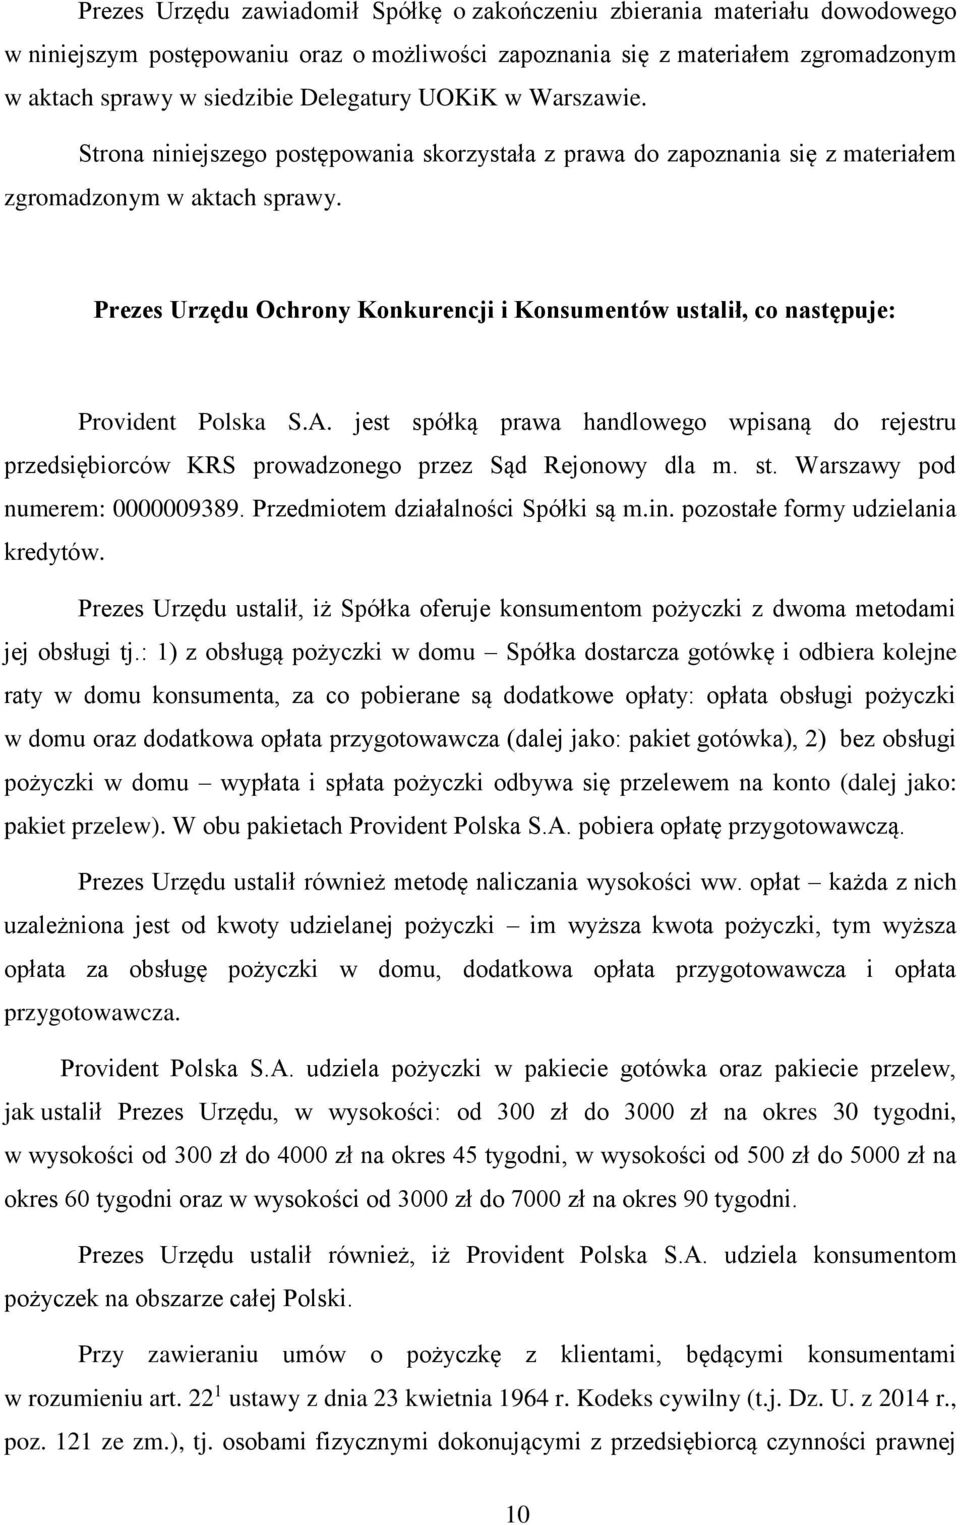 Prezes Urzędu Ochrony Konkurencji i Konsumentów ustalił, co następuje: Provident Polska S.A. jest spółką prawa handlowego wpisaną do rejestru przedsiębiorców KRS prowadzonego przez Sąd Rejonowy dla m.